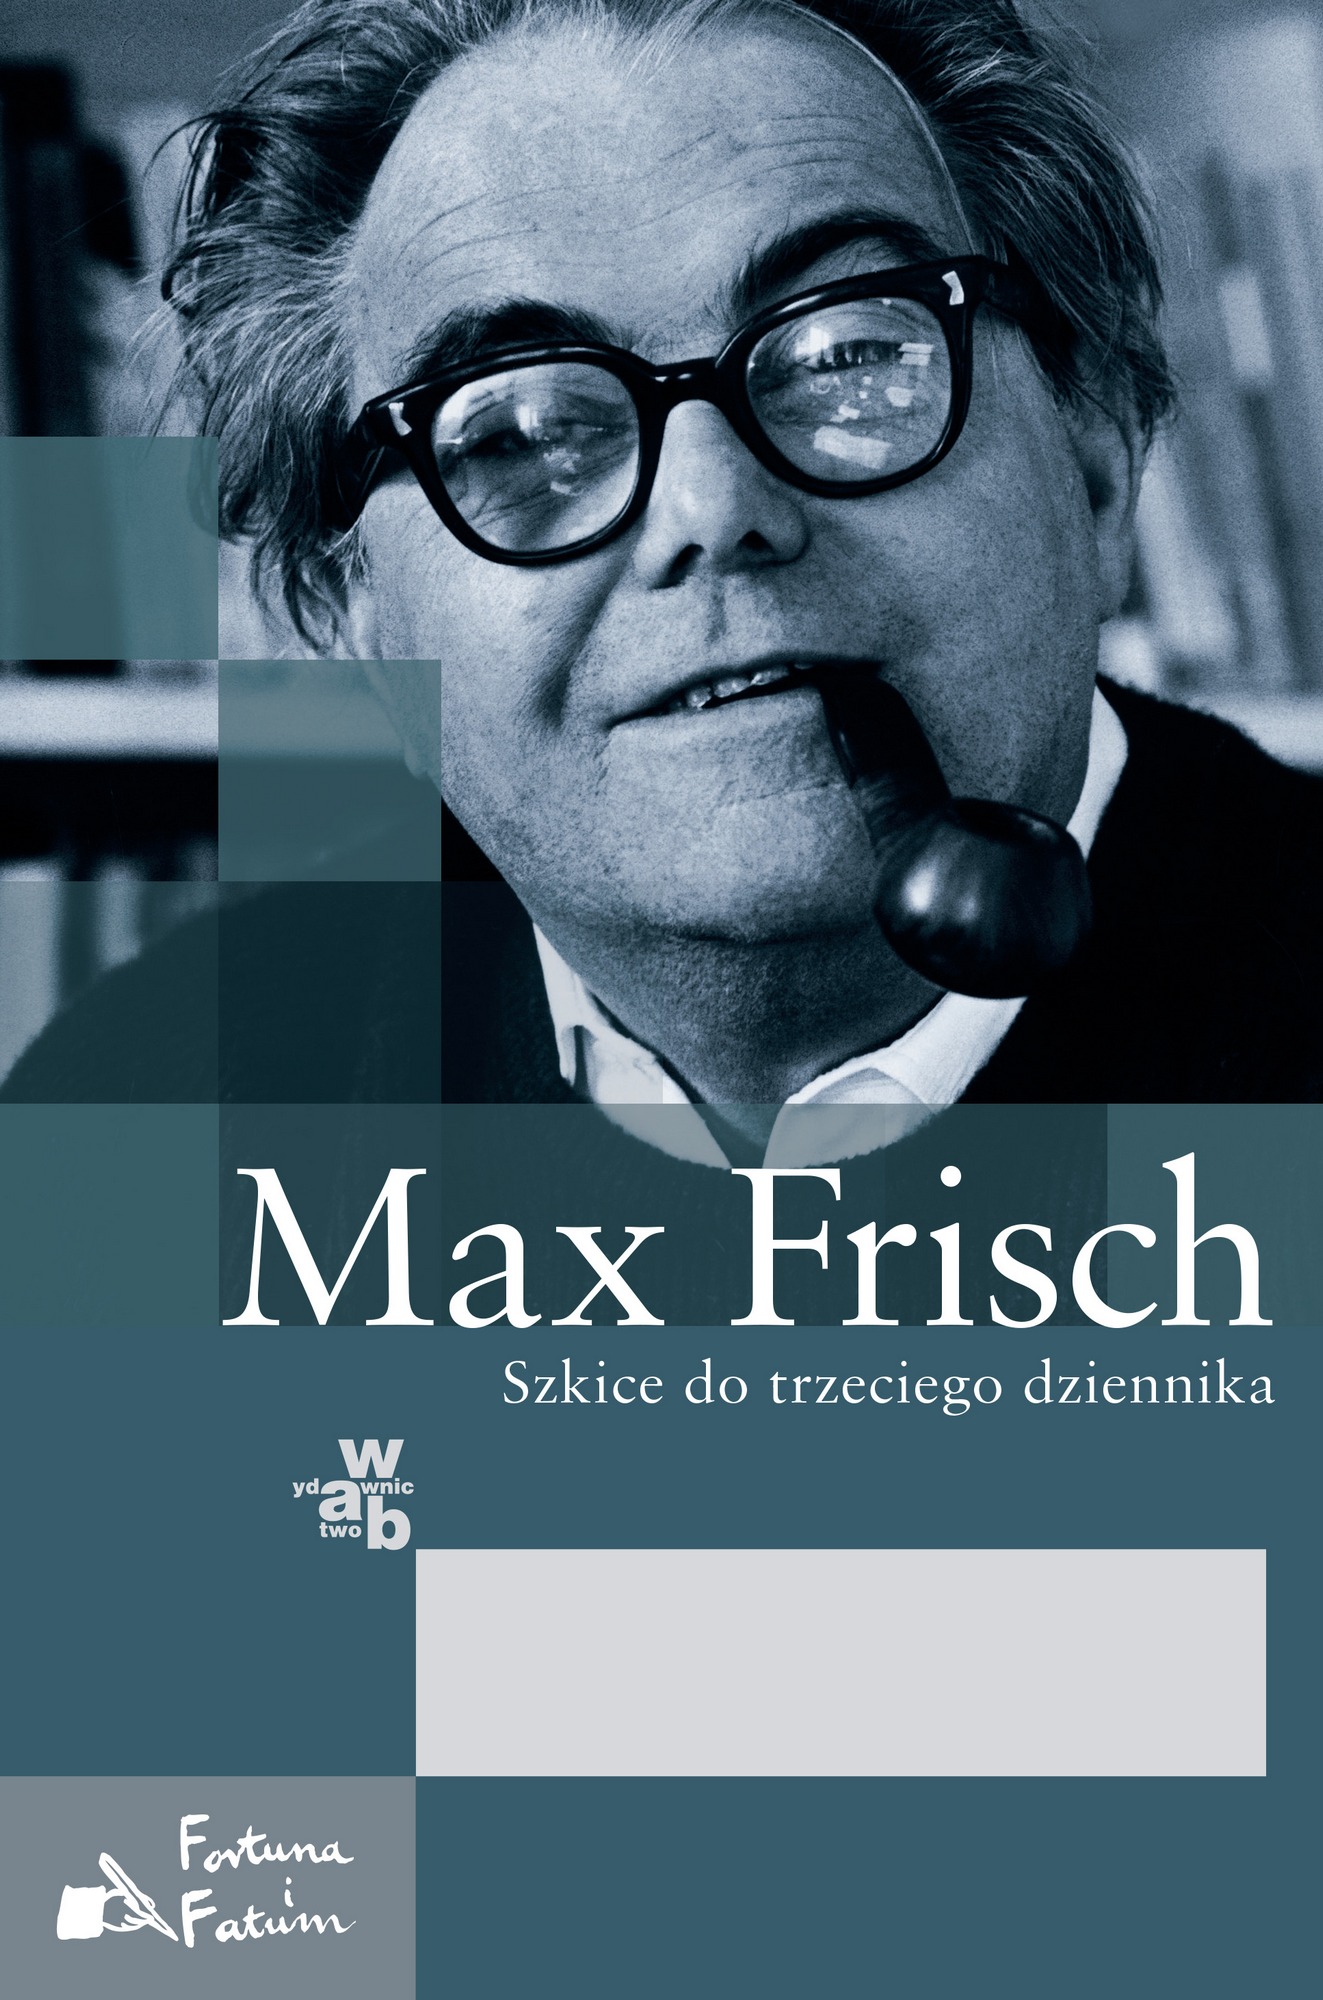 Max Frisch, „Szkice do trzeciego dziennika” – okładka (źródło: materiały prasowe wydawcy)